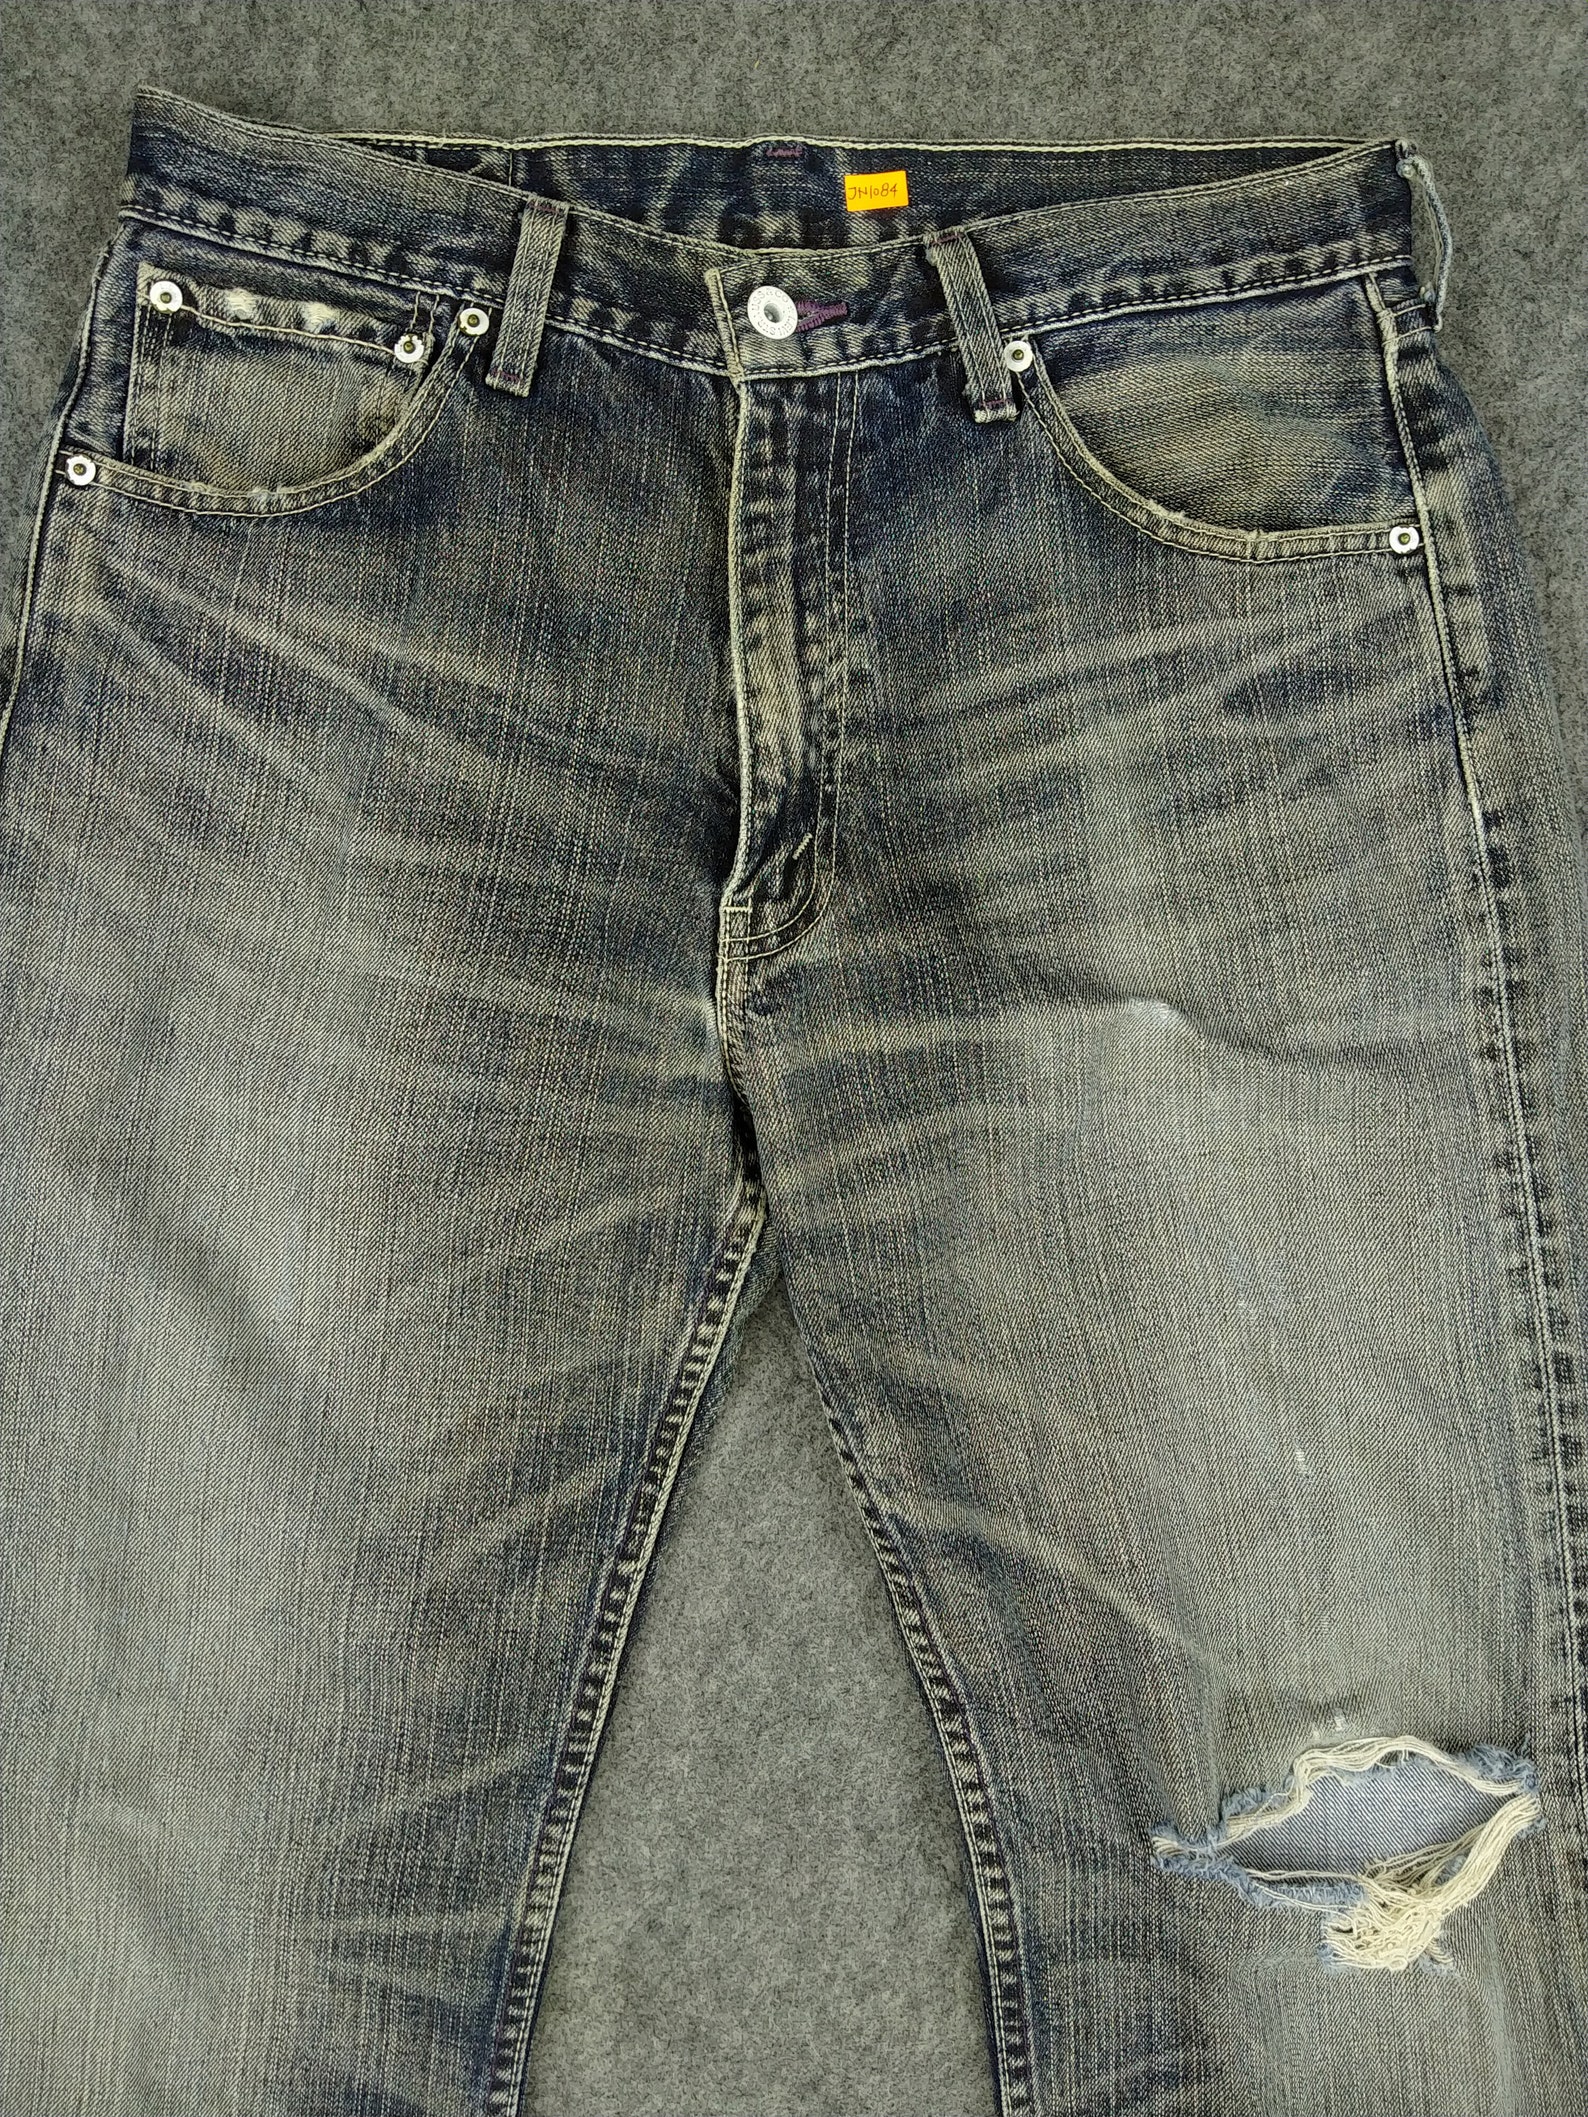 Vintage Levi's 503 Jeans 31x33.5 Whisker Distressed Denim | Etsy